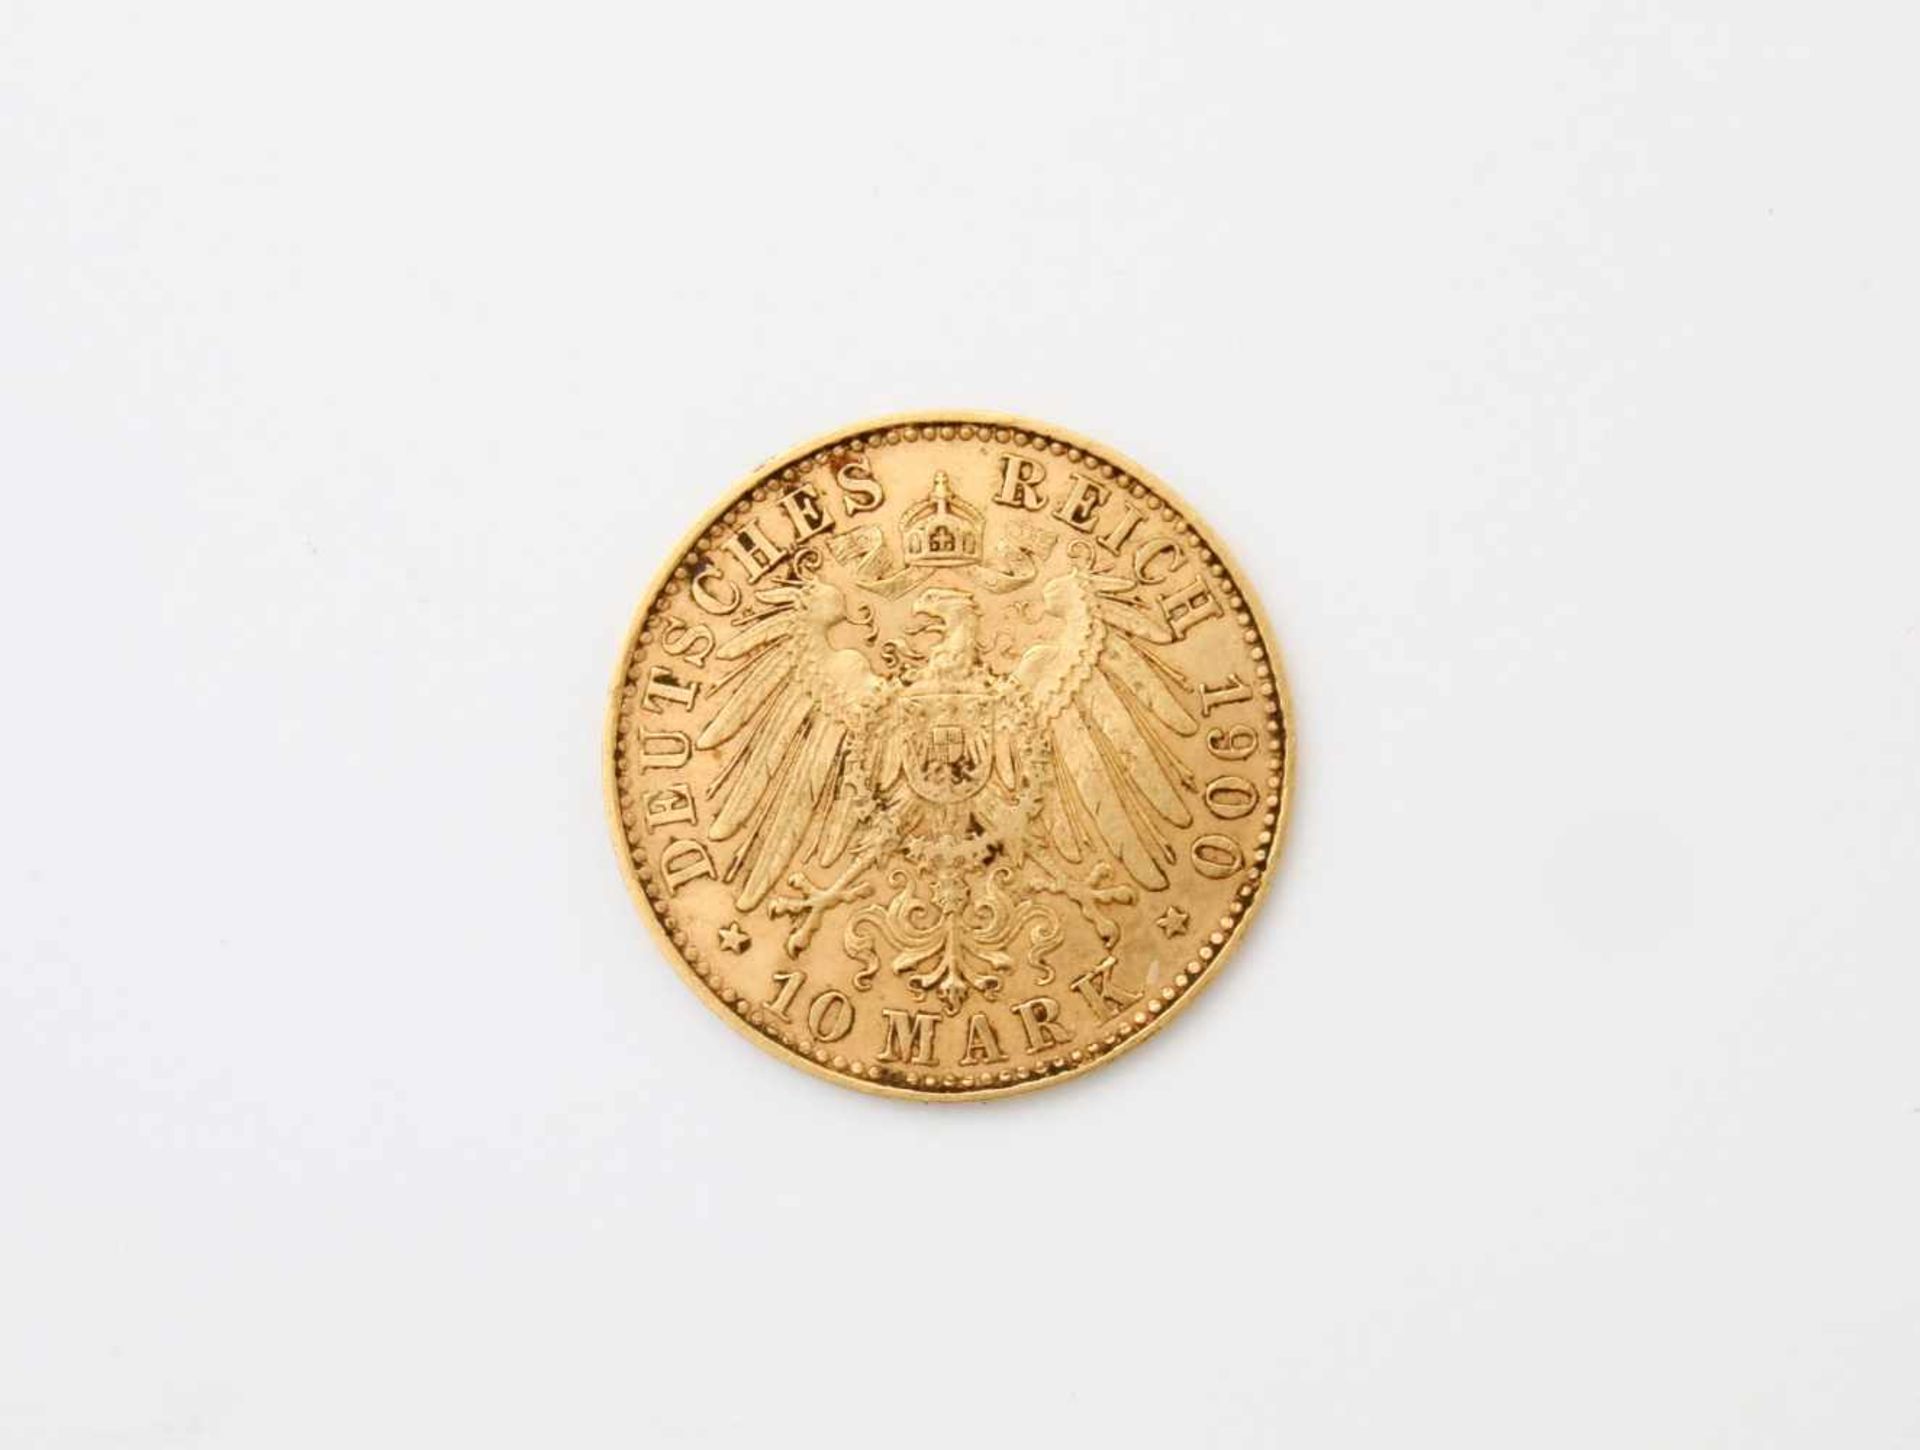 Goldmünze Albert 10 Mark - Sachsen GG 900, Prägestätte "E", 1900, ss. Gewicht: 3,9 g. - Bild 2 aus 2